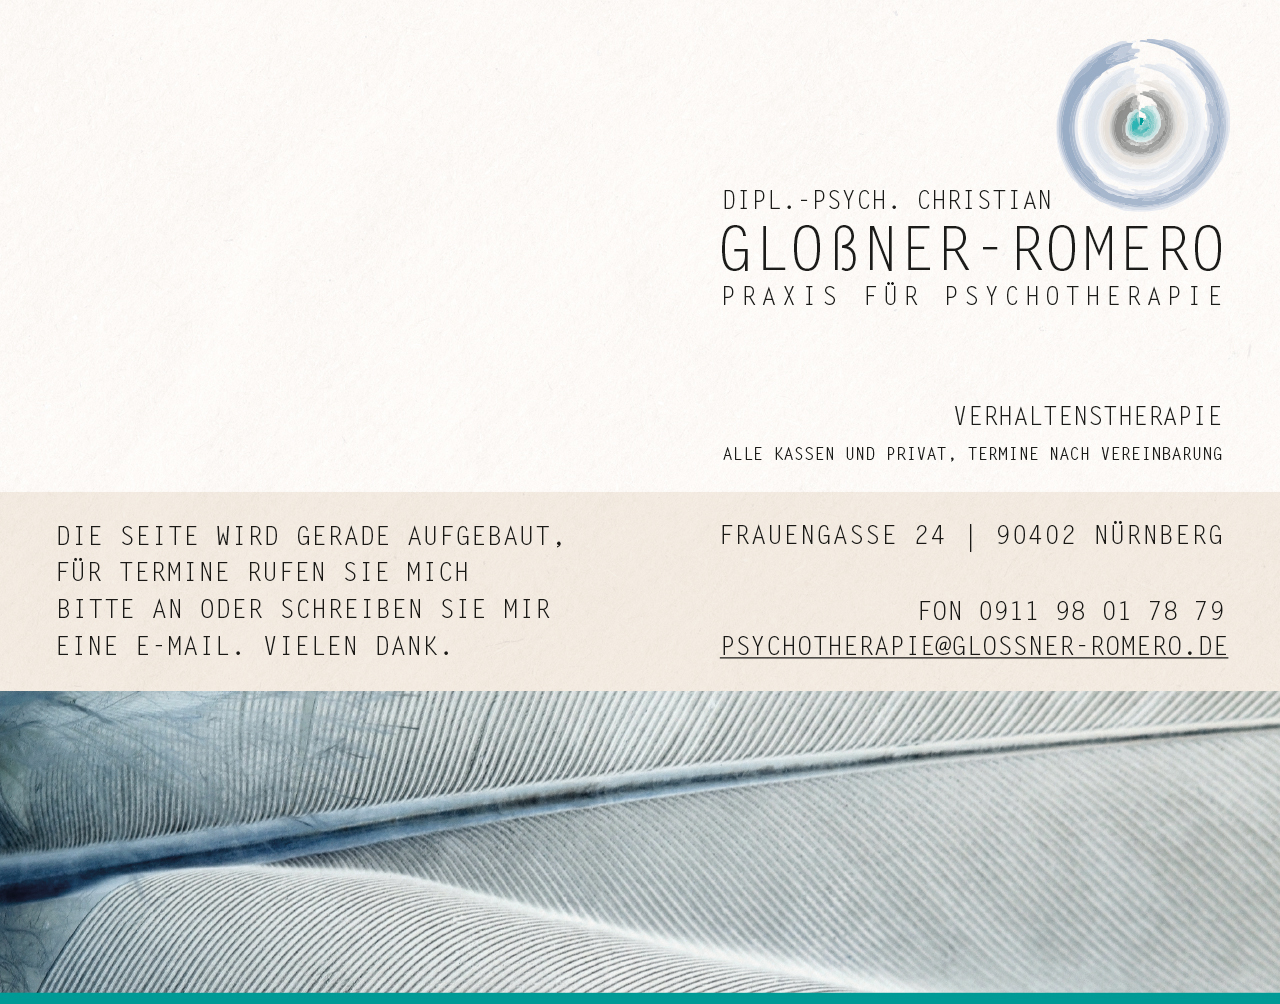 Psychotherapie – Glossner-Romero